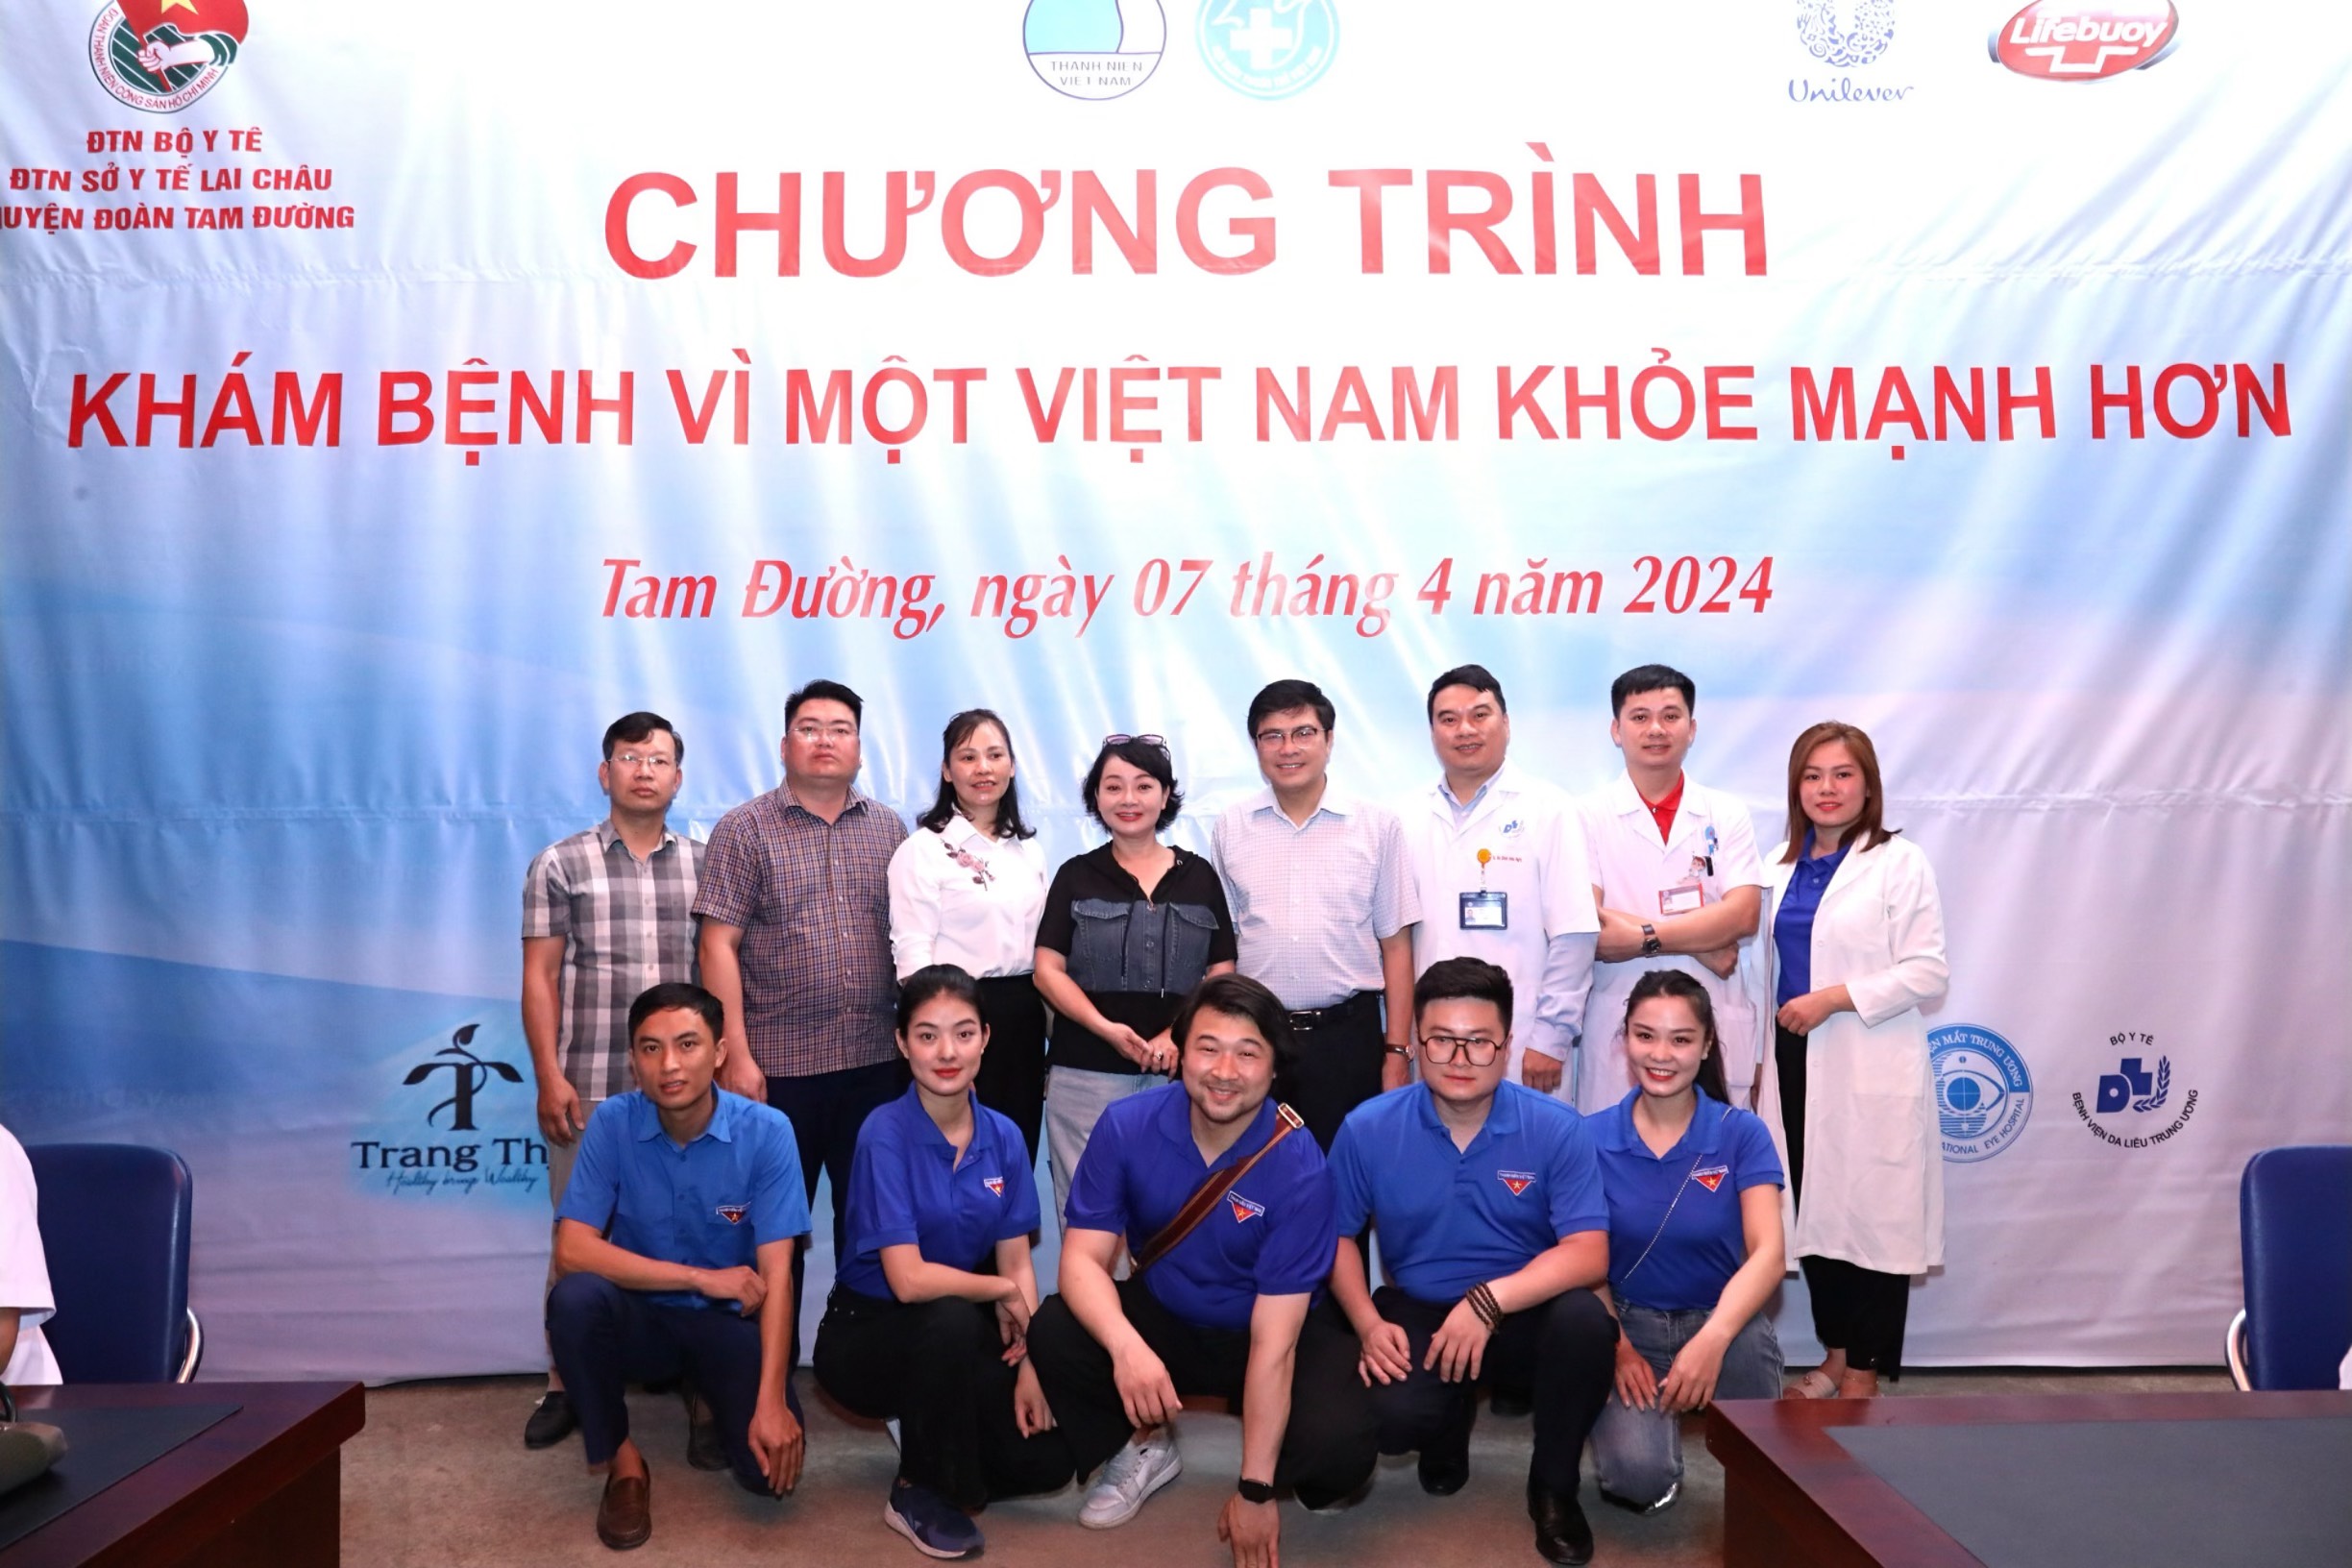 Chương trình “Khám bệnh vì một Việt Nam khoẻ mạnh hơn”.